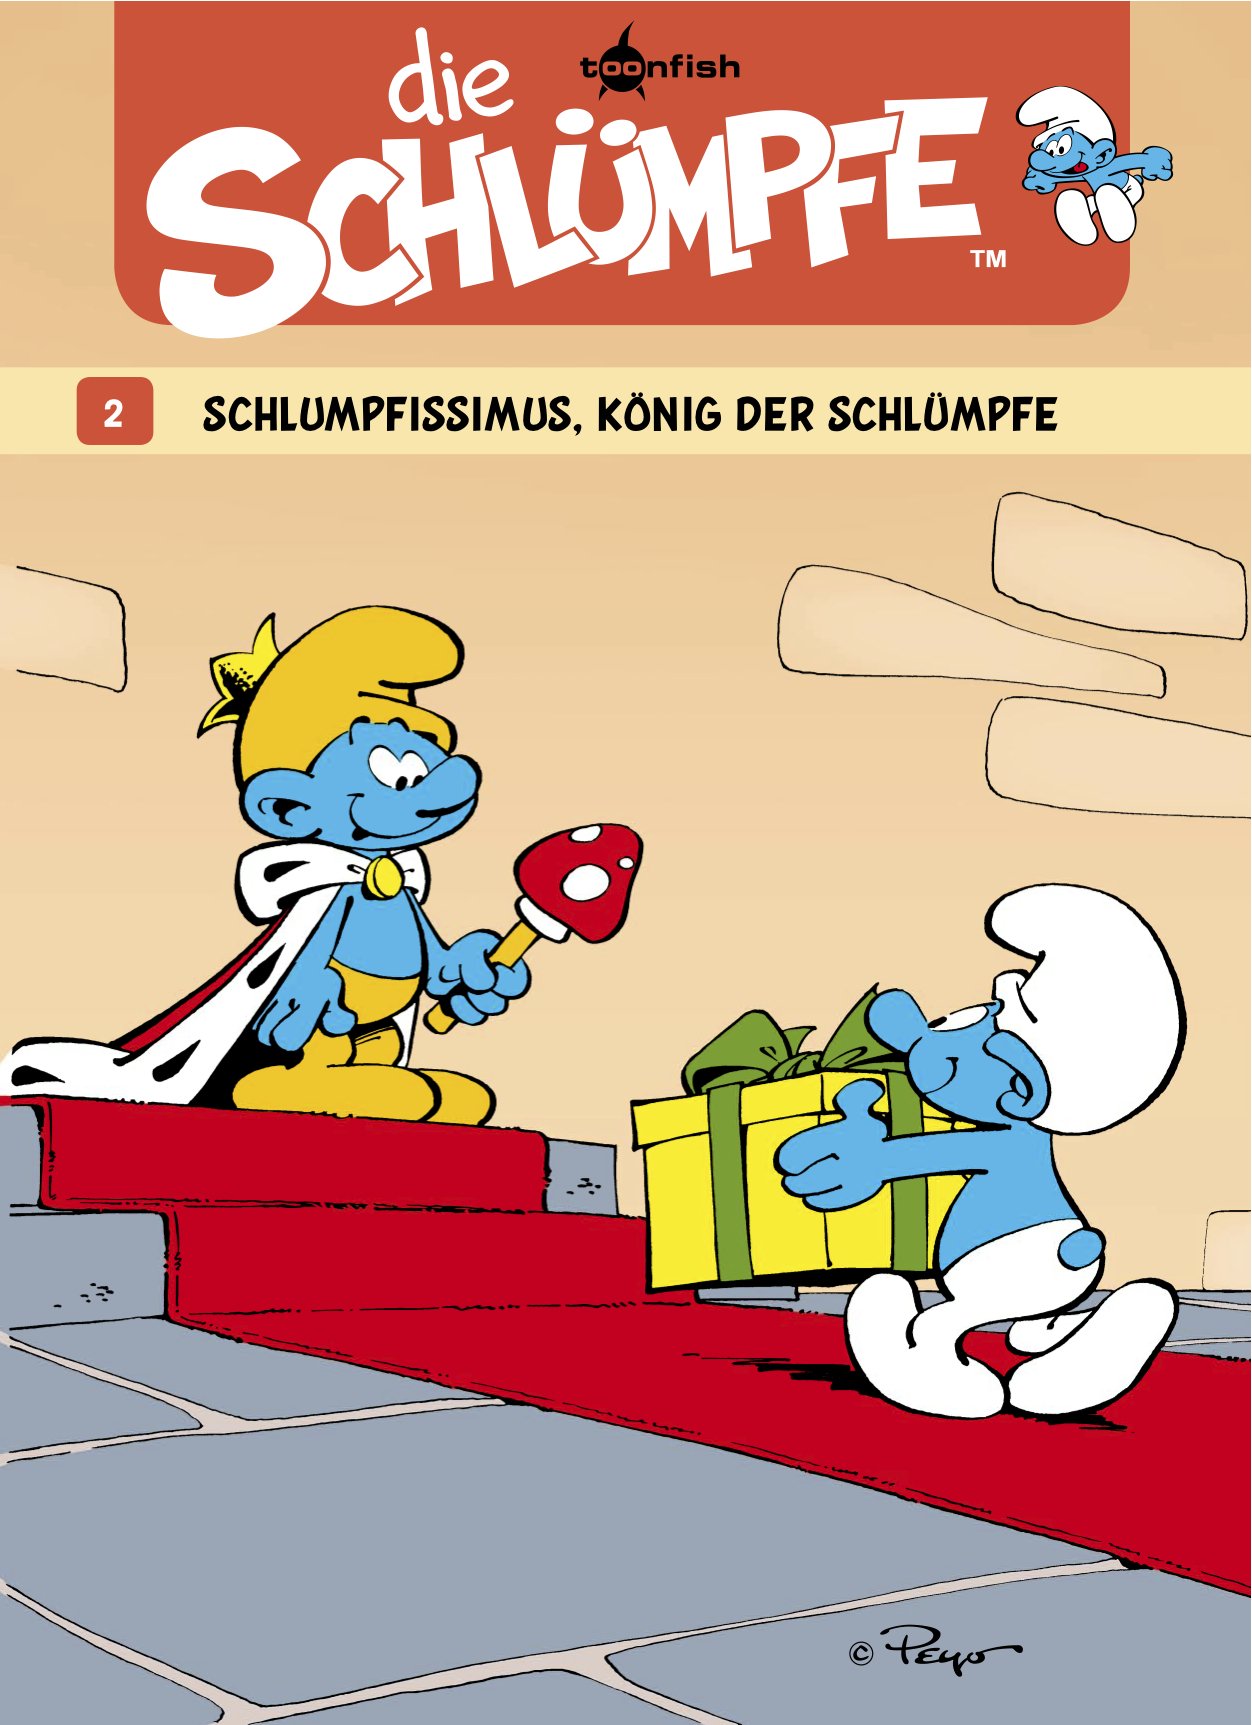 Die Schlümpfe 02. Schlumpfissimus, König der Schlümpfe (German Edition)